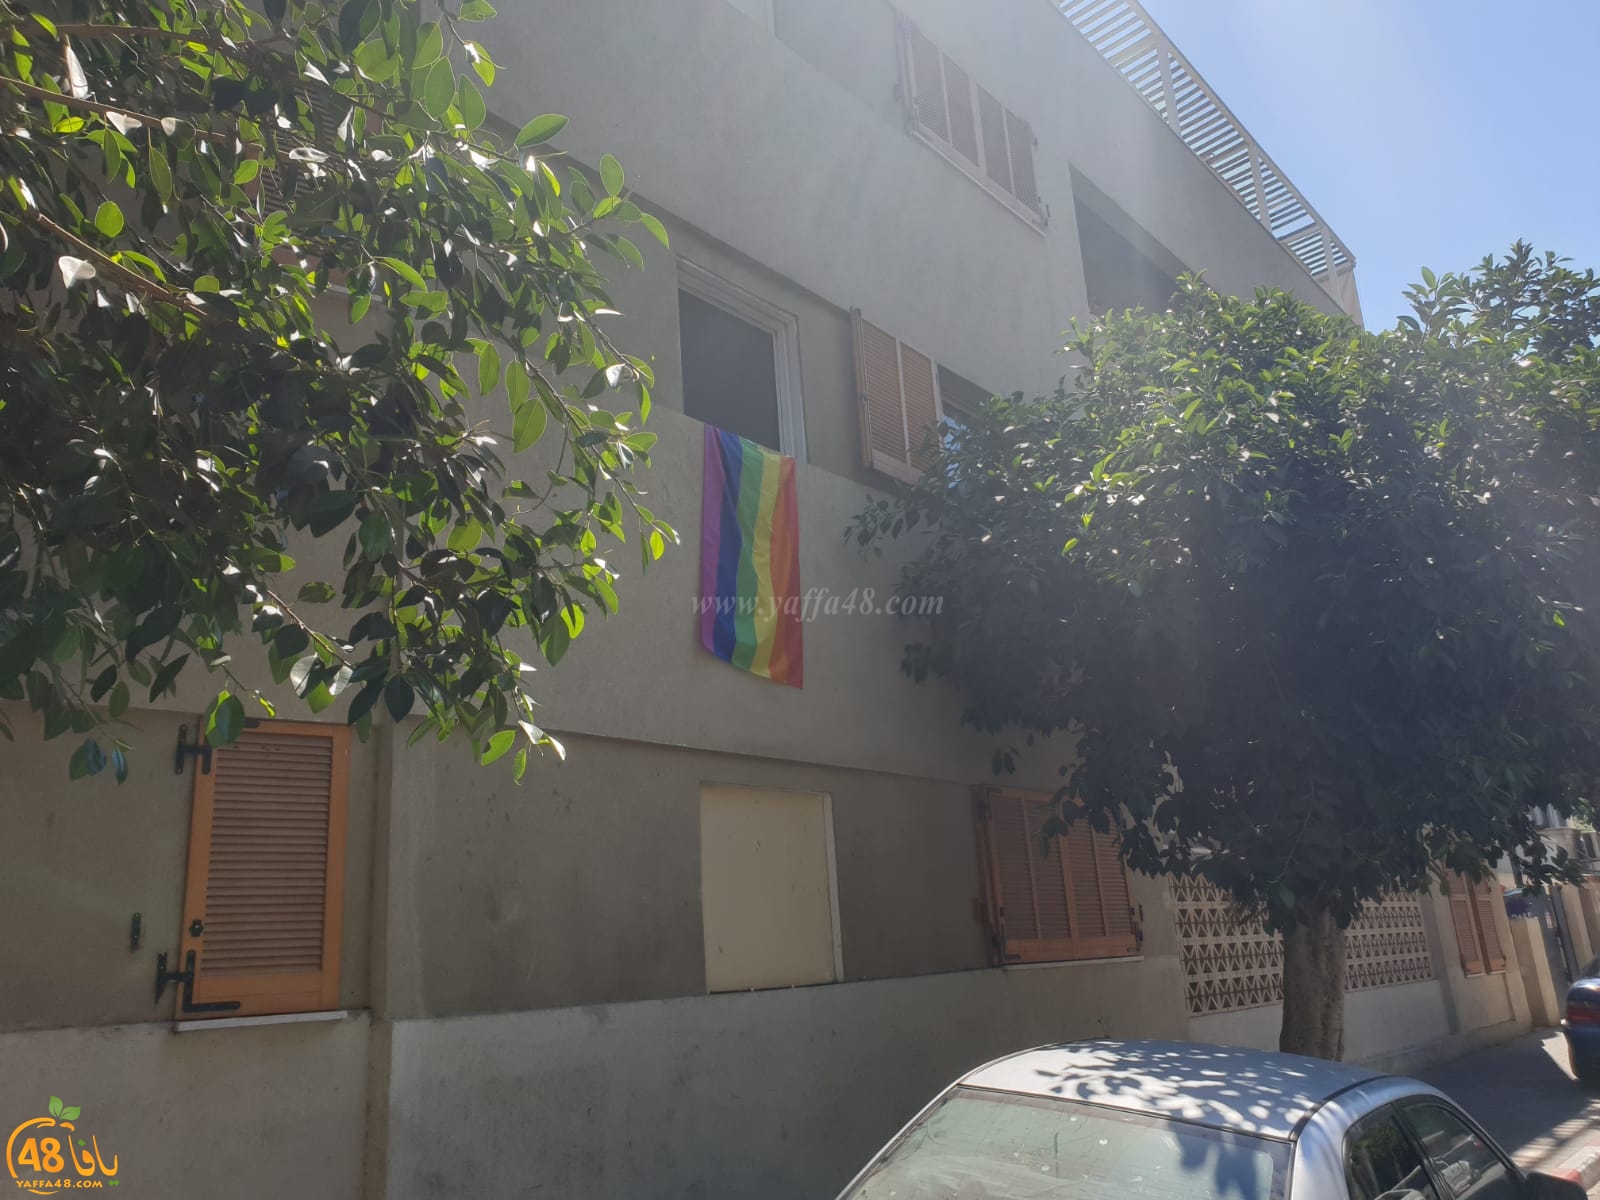 رفع علم لمثليي الجنس في حي النزهة بيافا والسكان يتذمرّون 